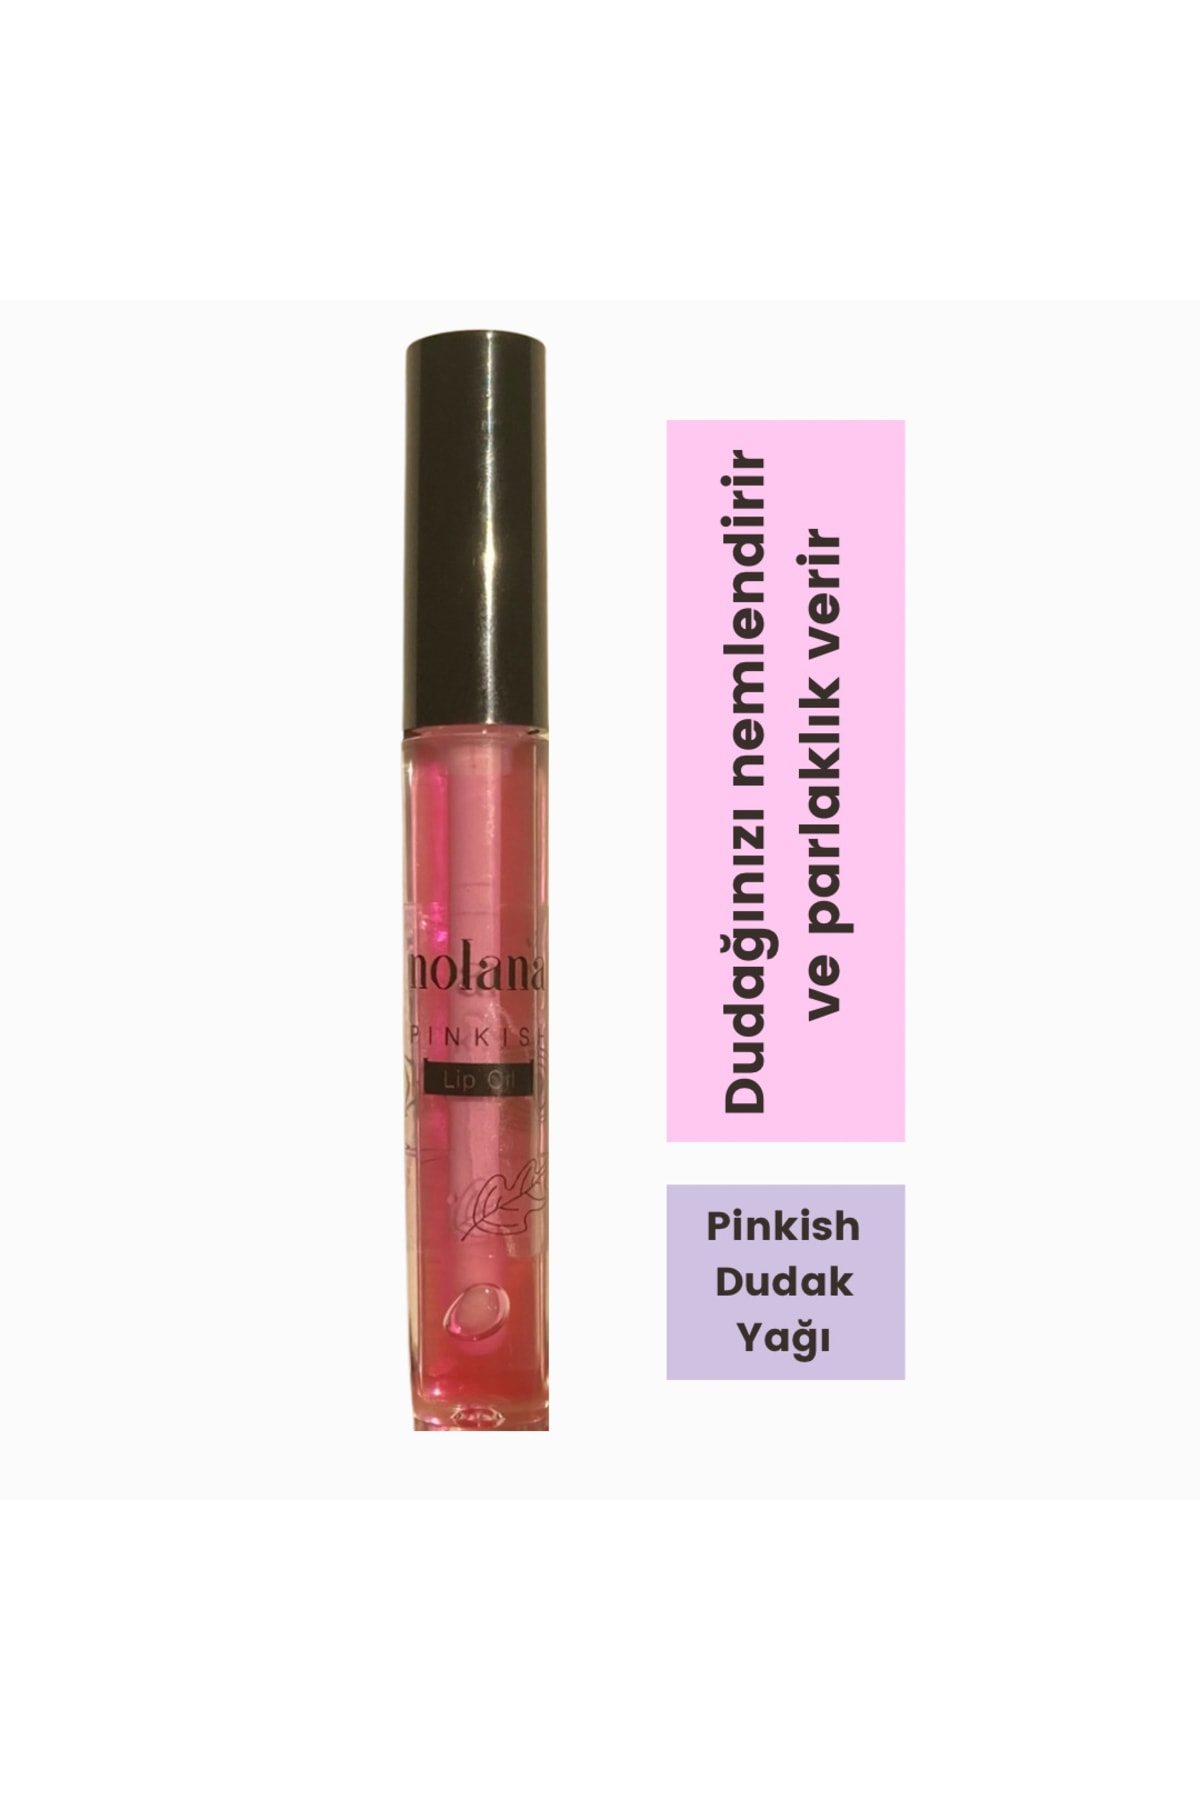 Nolana Pinkish Lip Oil - 8 ml